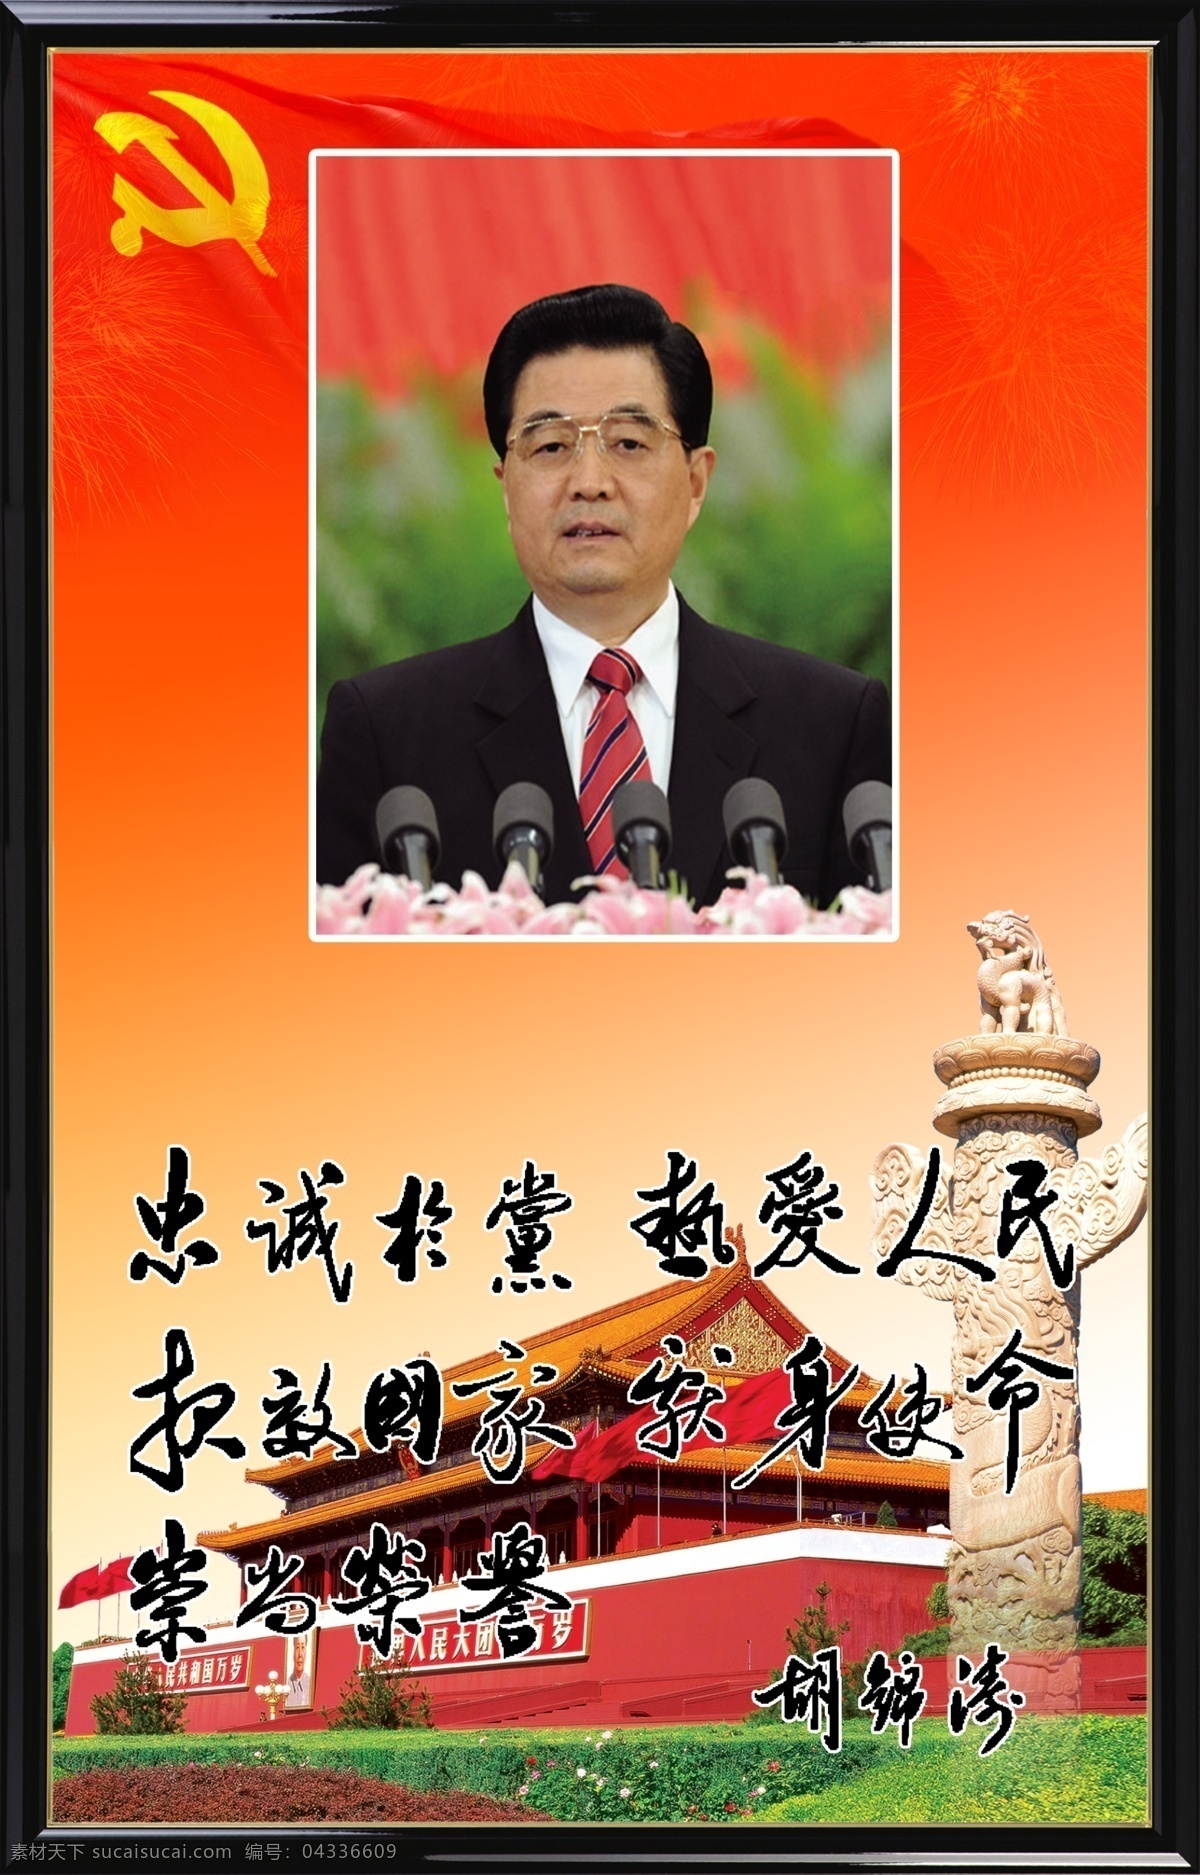 国家 领导人 语录 国家领导人 背景 江泽民题词 人物 风景 展板模板 广告设计模板 源文件